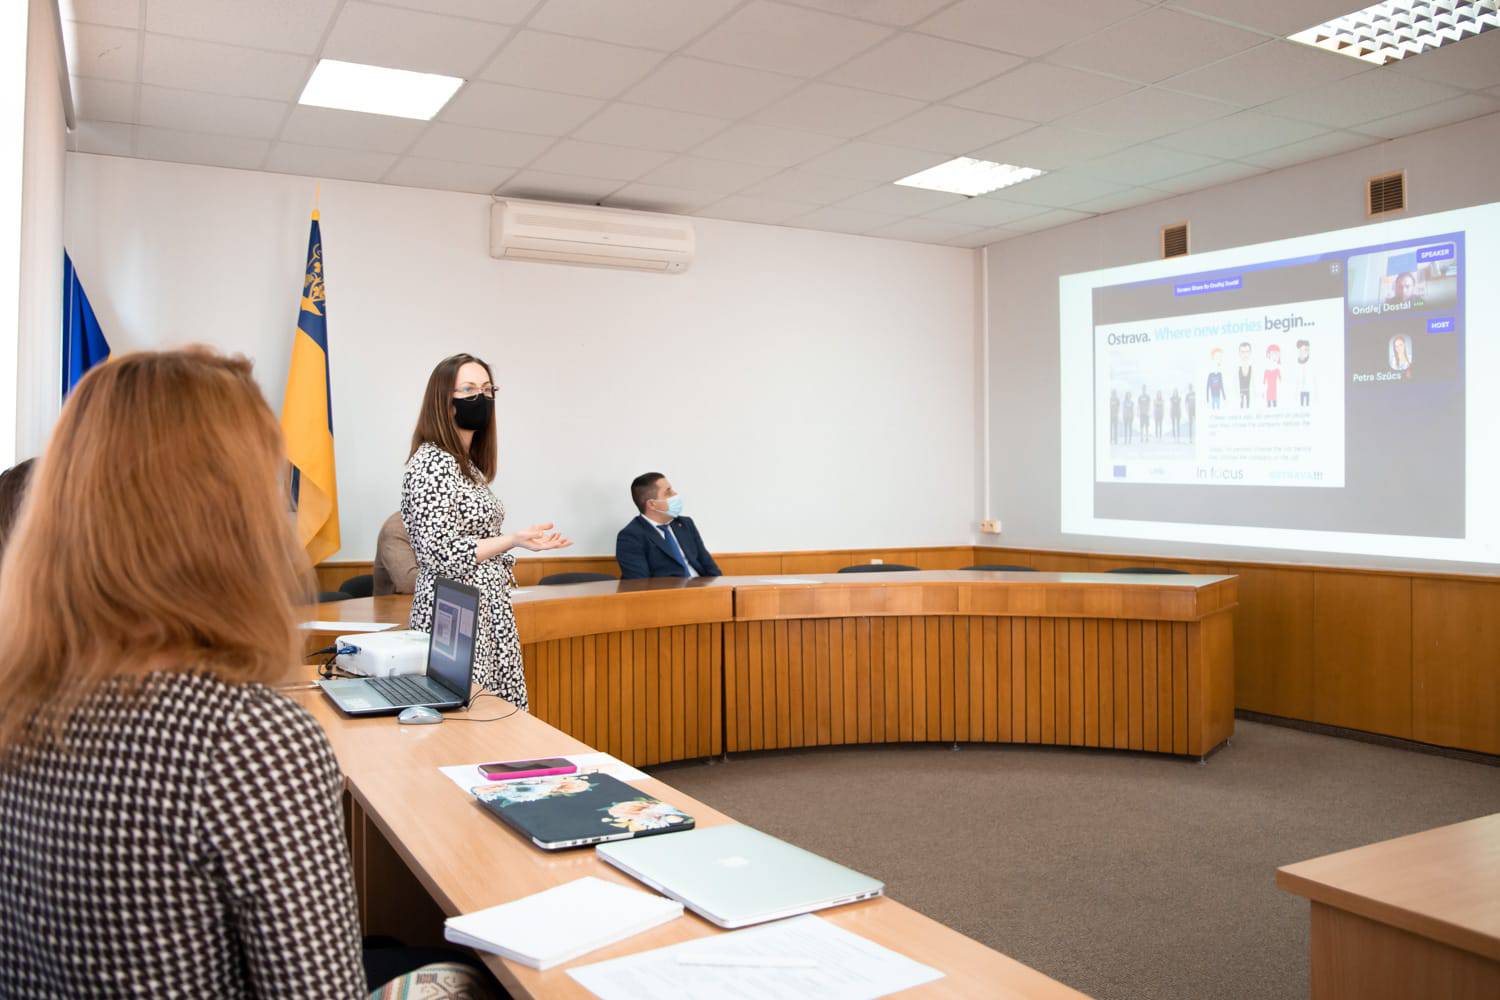 Співпрацю у реалізації проєкту “TalentMagnet” в Ужгороді обговорили під час робочої зустрічі в міськраді